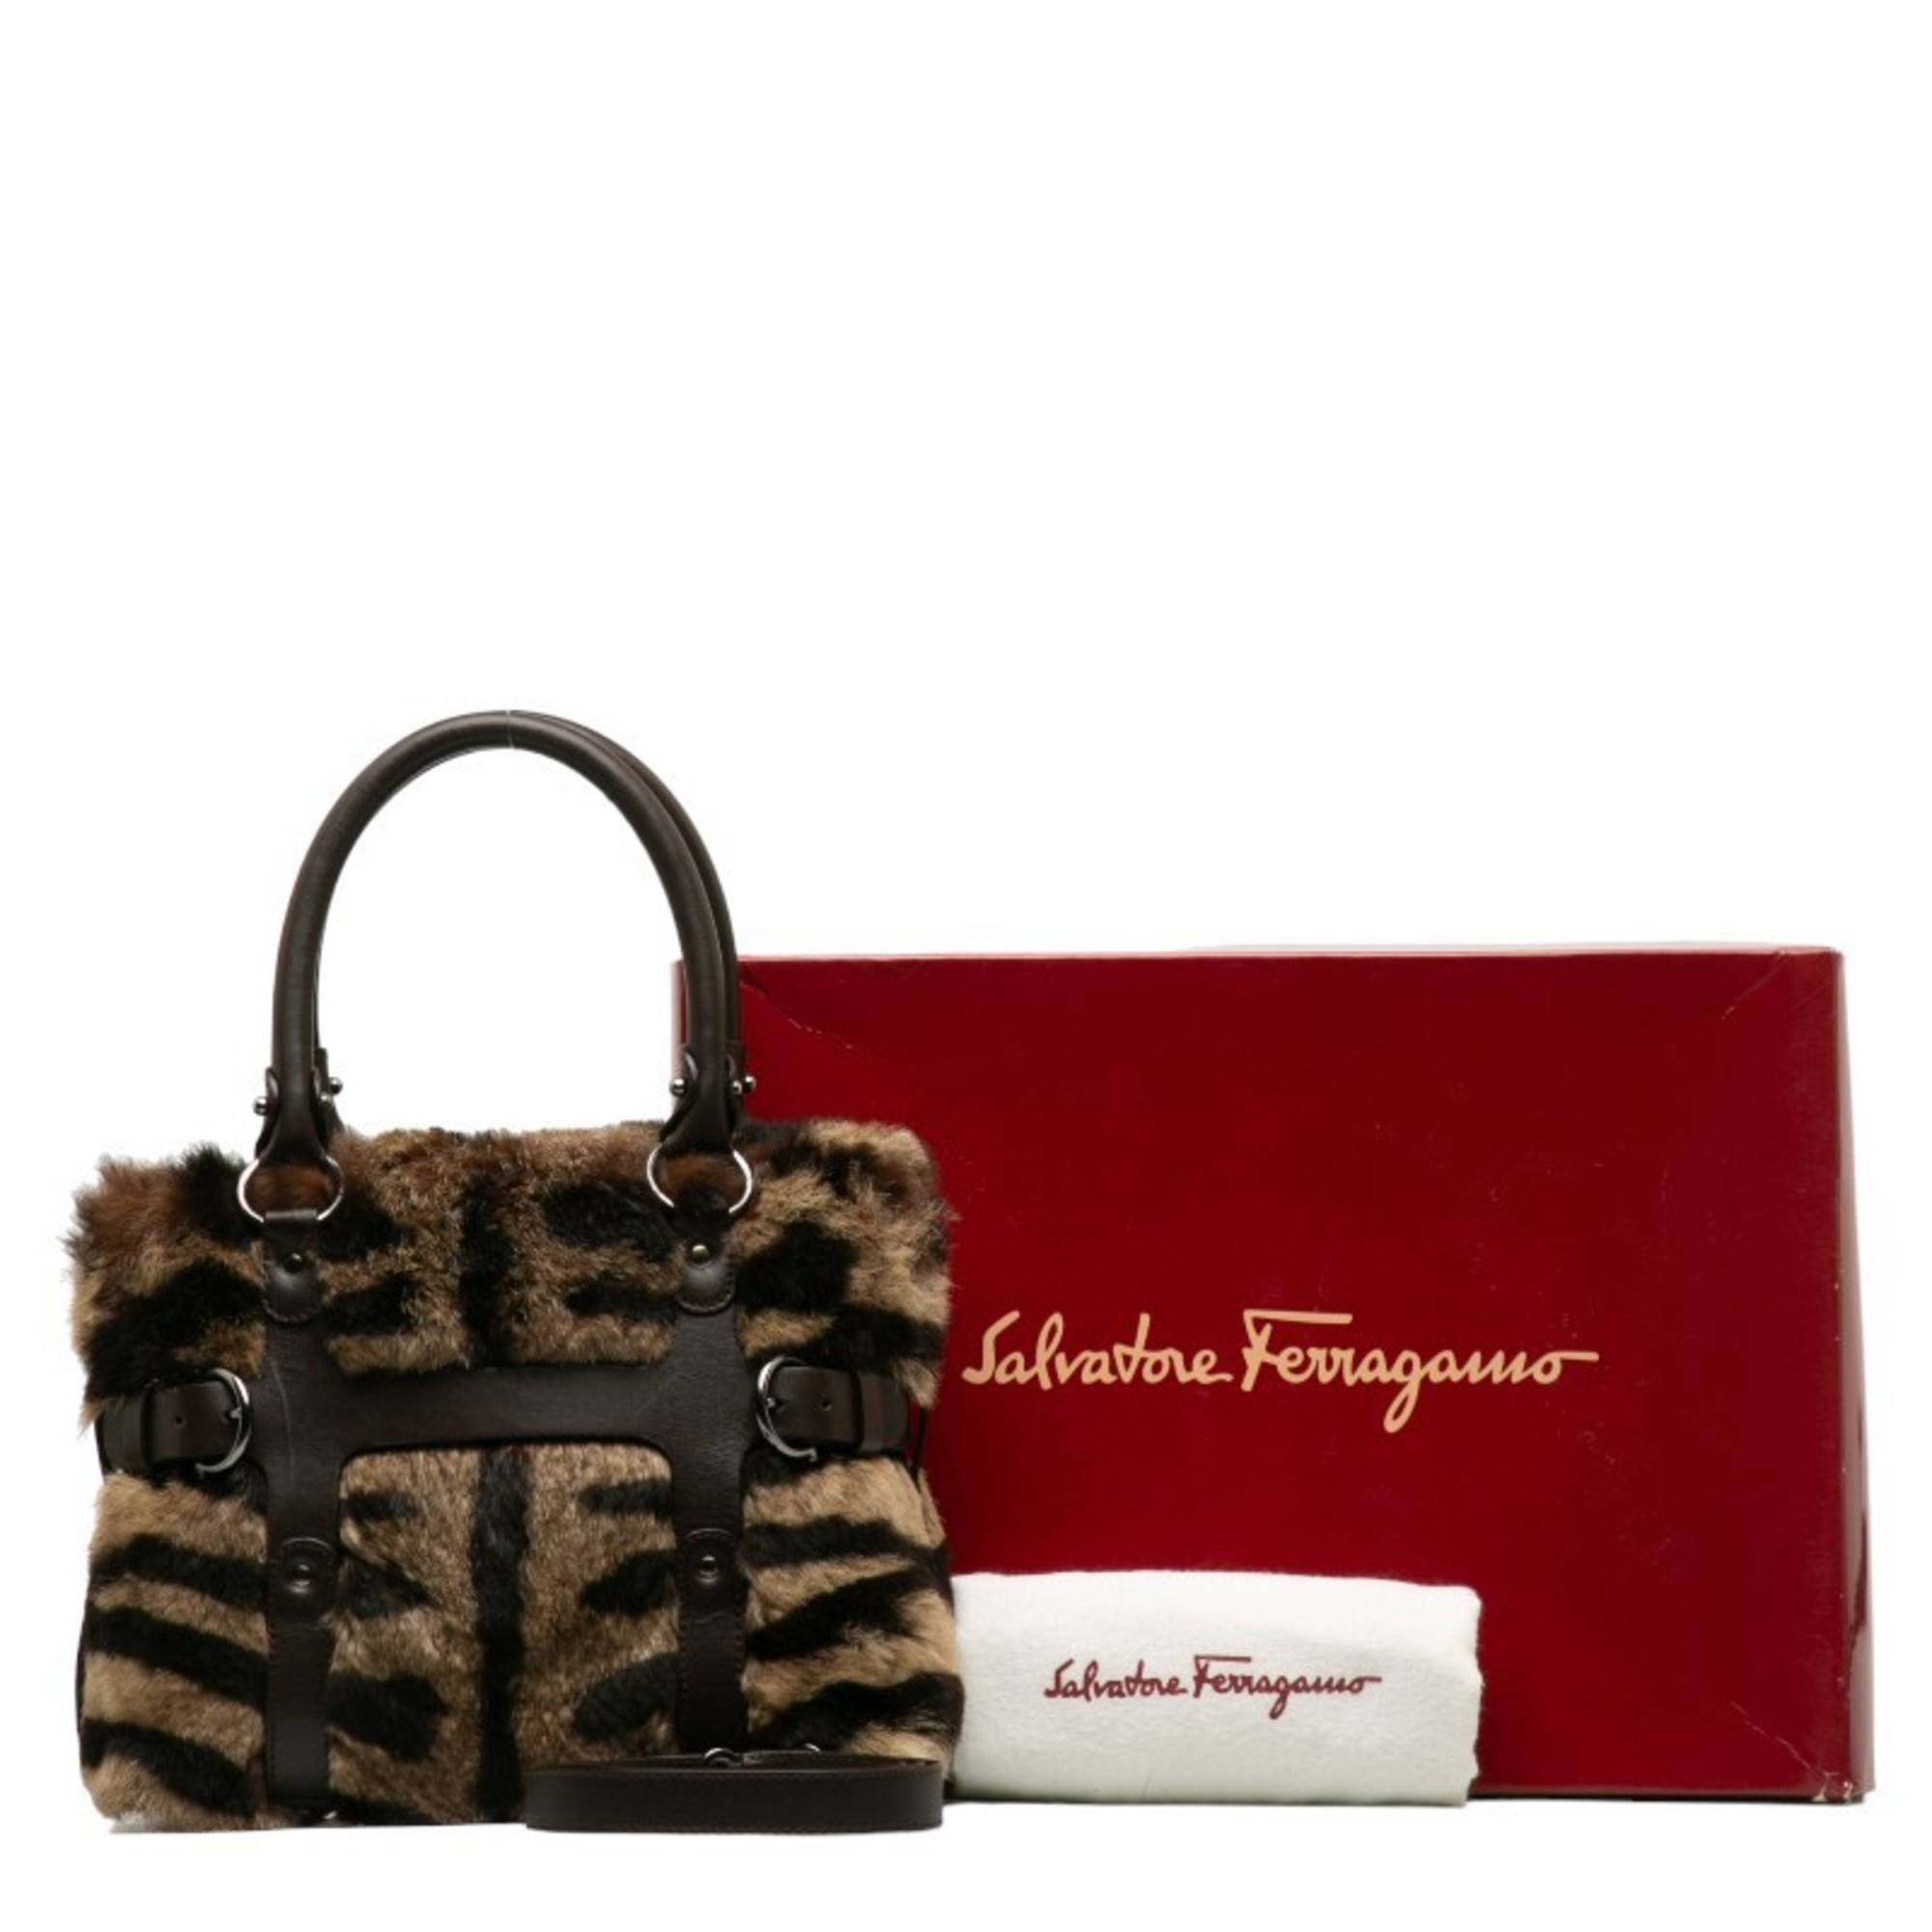 Salvatore Ferragamo Zebra Pattern Handbag Shoulder Bag AF-21 4882 Brown Rabbit Fur Leather Women's